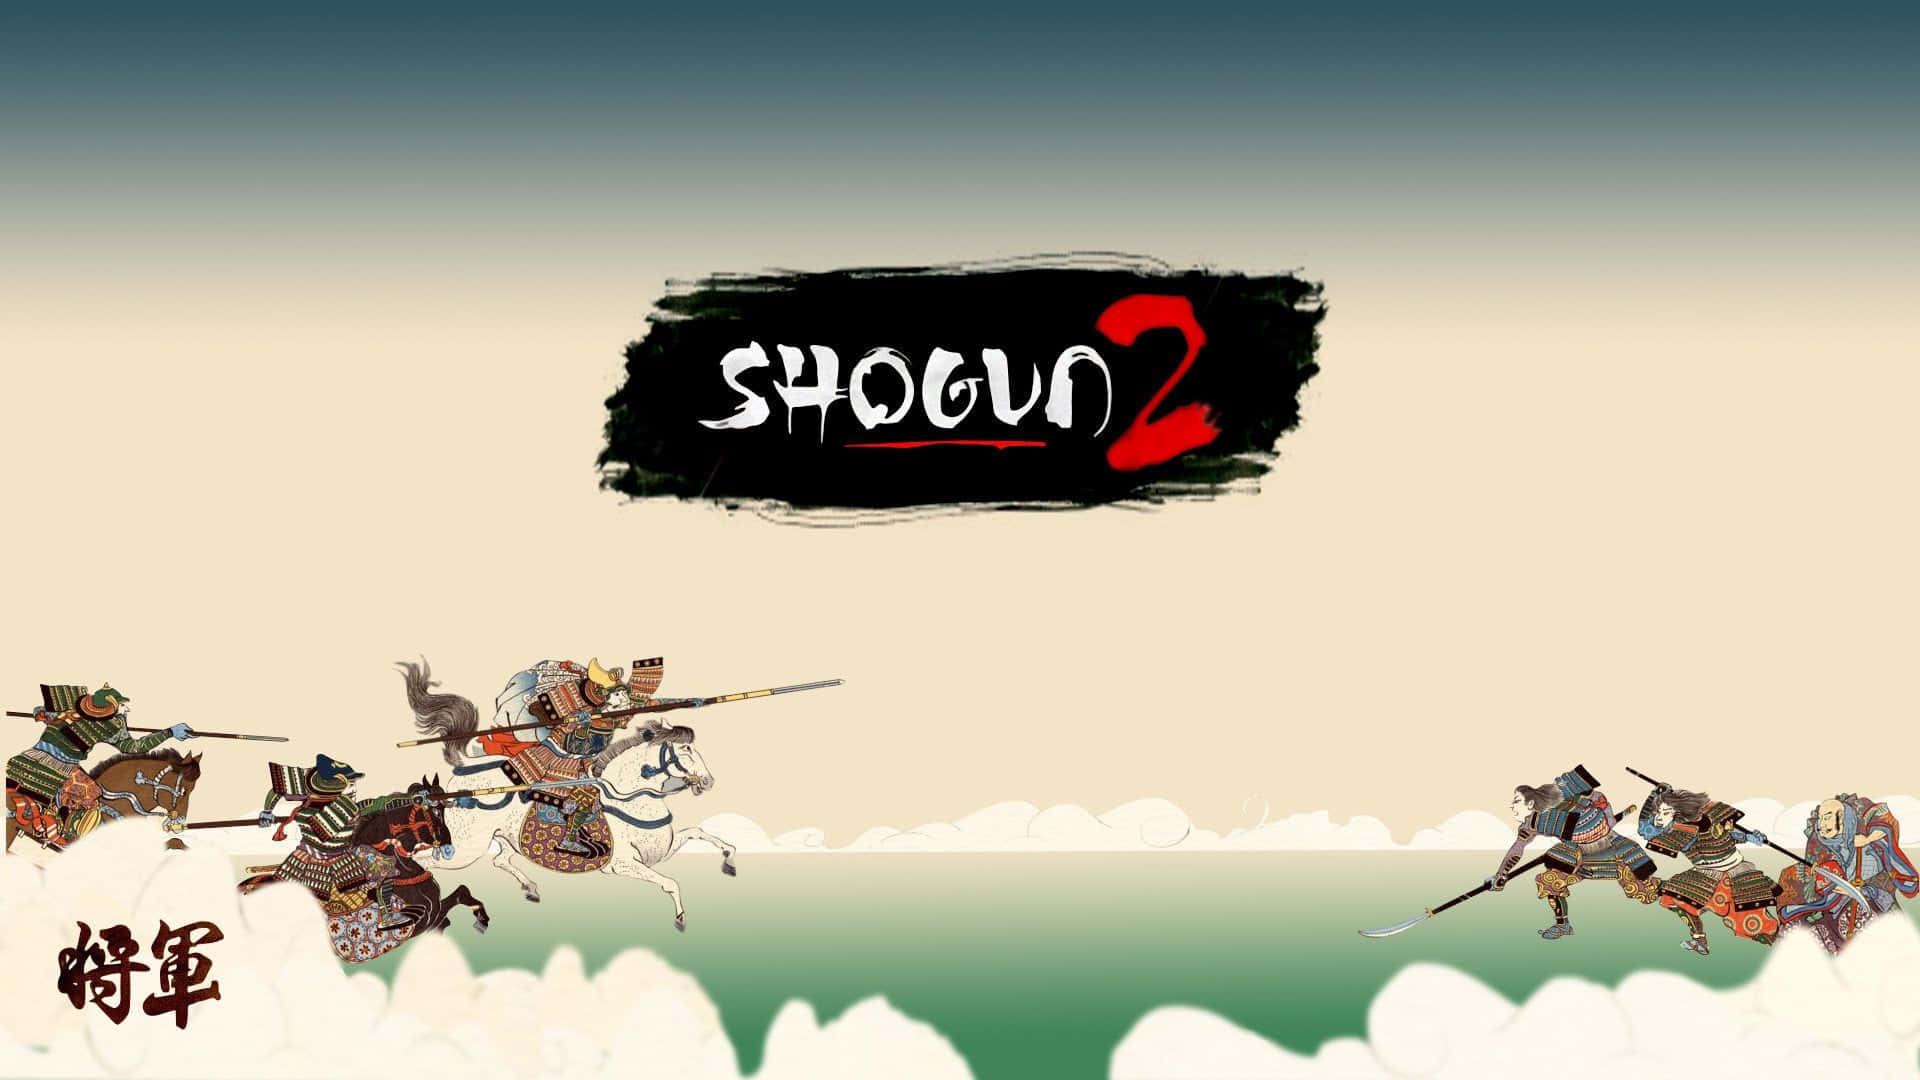 Conquistail Giappone E Riconquista Il Tuo Onore In Total War: Shogun 2.